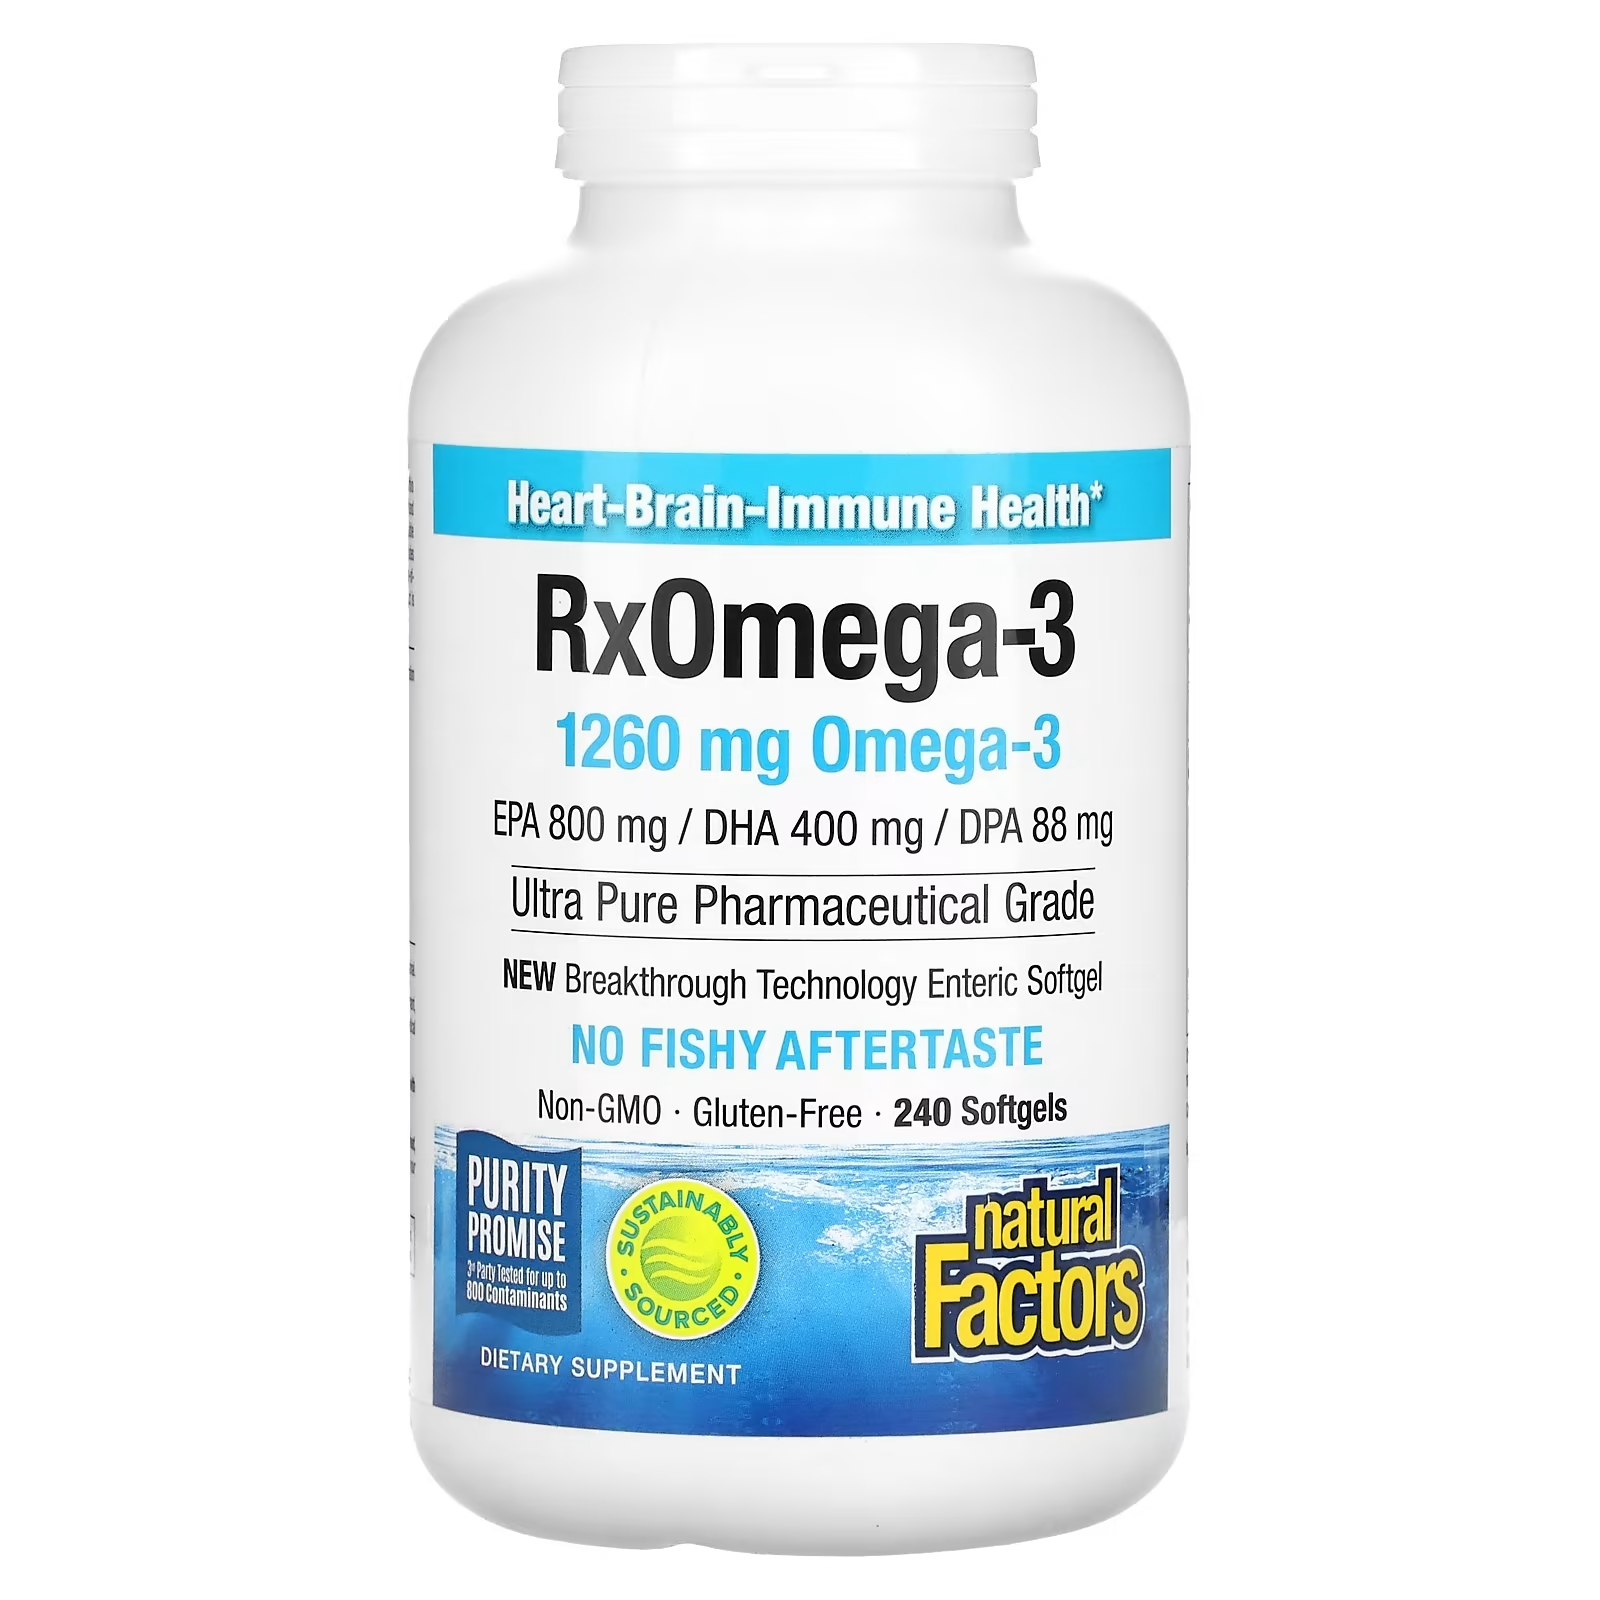 Natural Factors Natural Factors Rx Omega-3 рыбий жир 400 мг ЭПК и 200 мг ДГК, 240 мягких таблеток natural factors rx omega 3 1260 мг 120 мягких таблеток 630 мг на мягкую таблетку